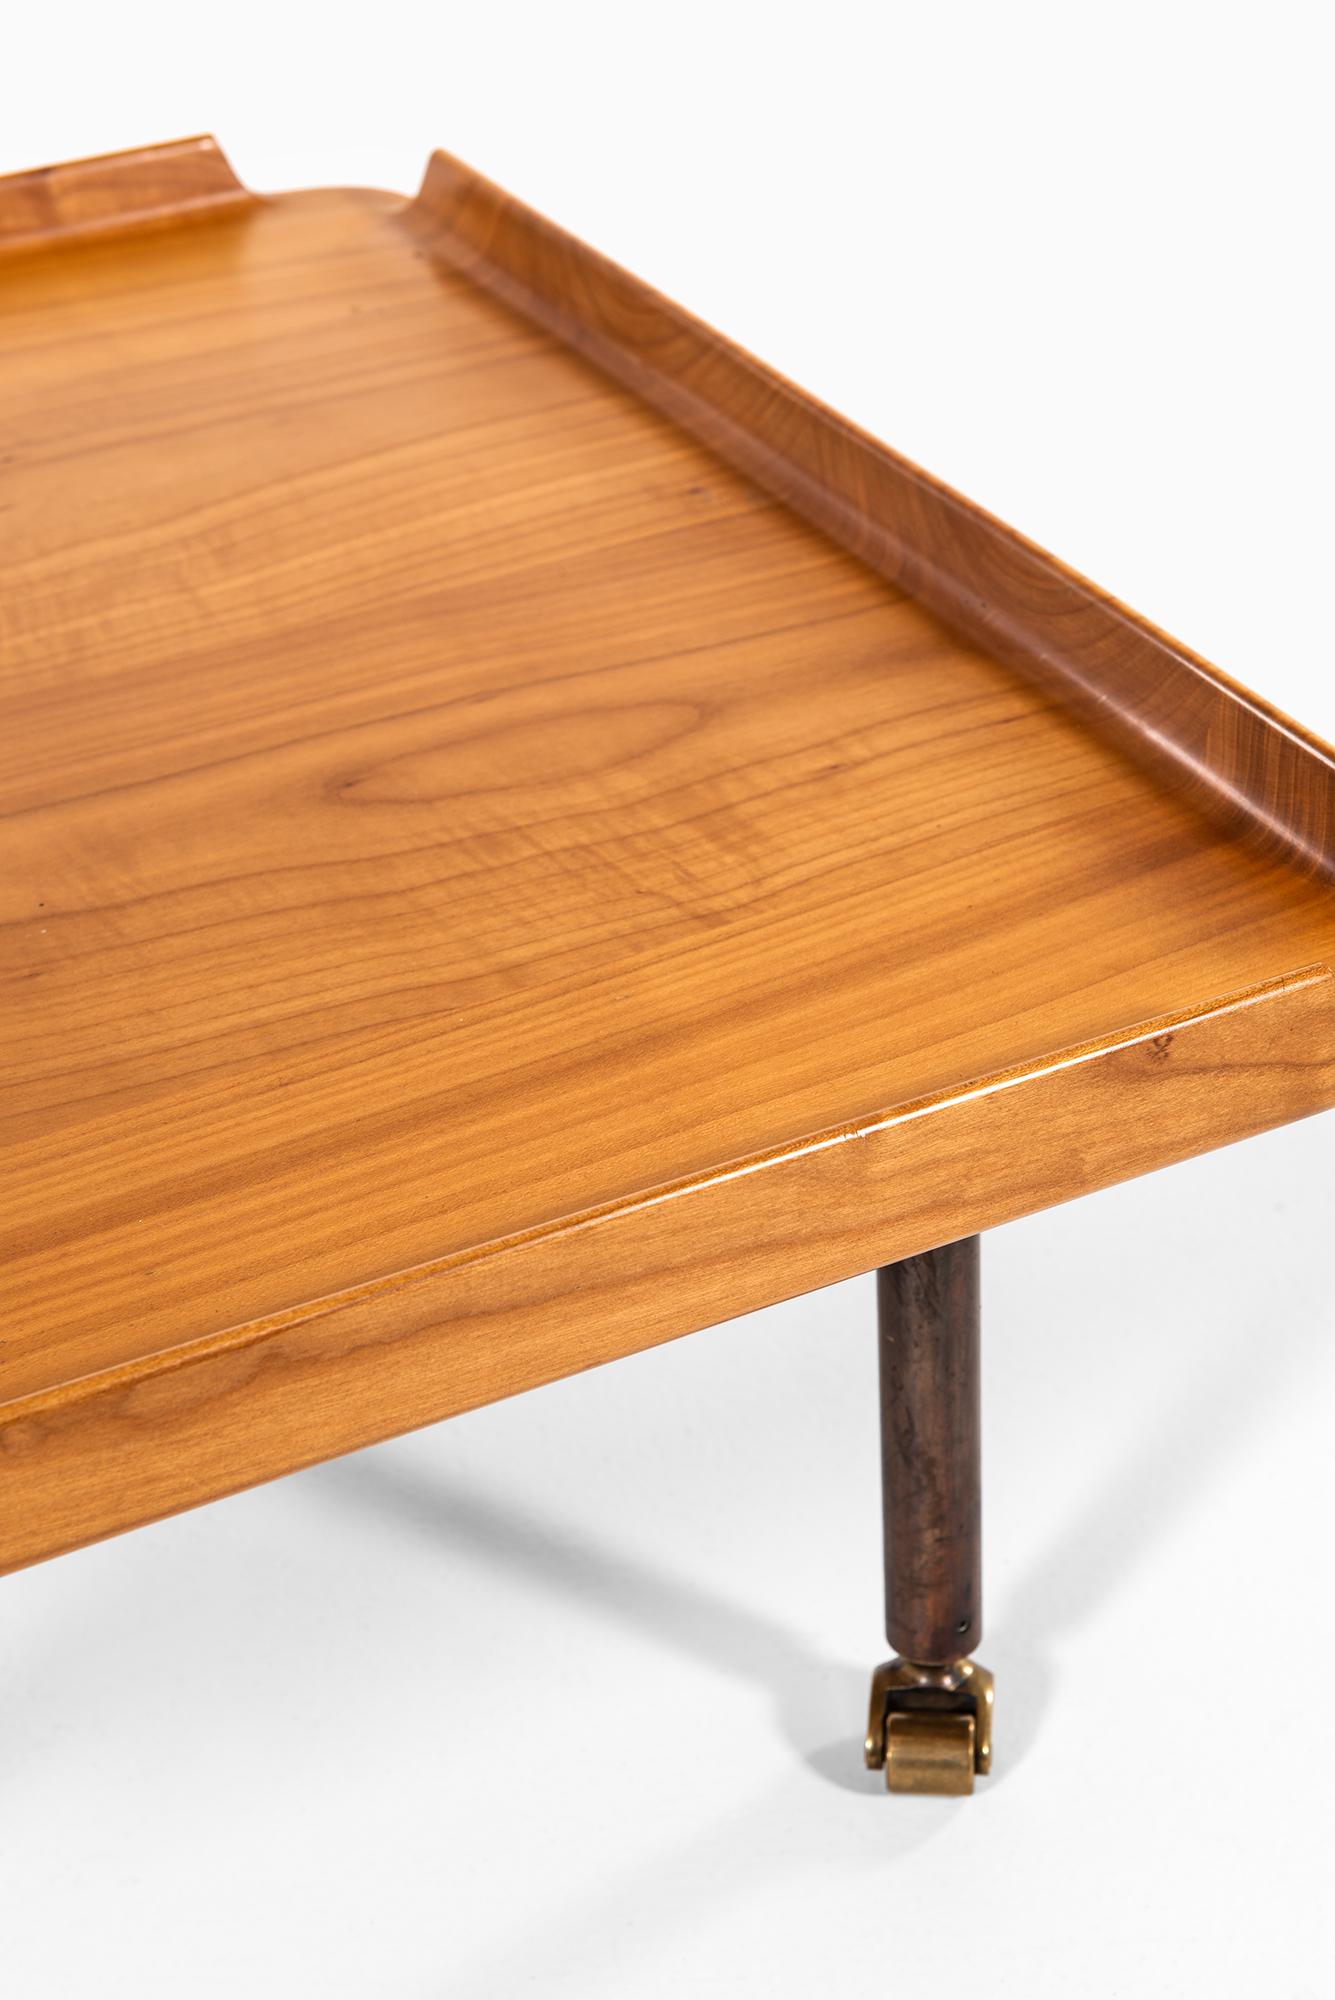 Très rare table basse conçue par Finn Juhl. Produit par l'ébéniste Niels Roth Andersen au Danemark. Produit uniquement en 2 exemplaires.